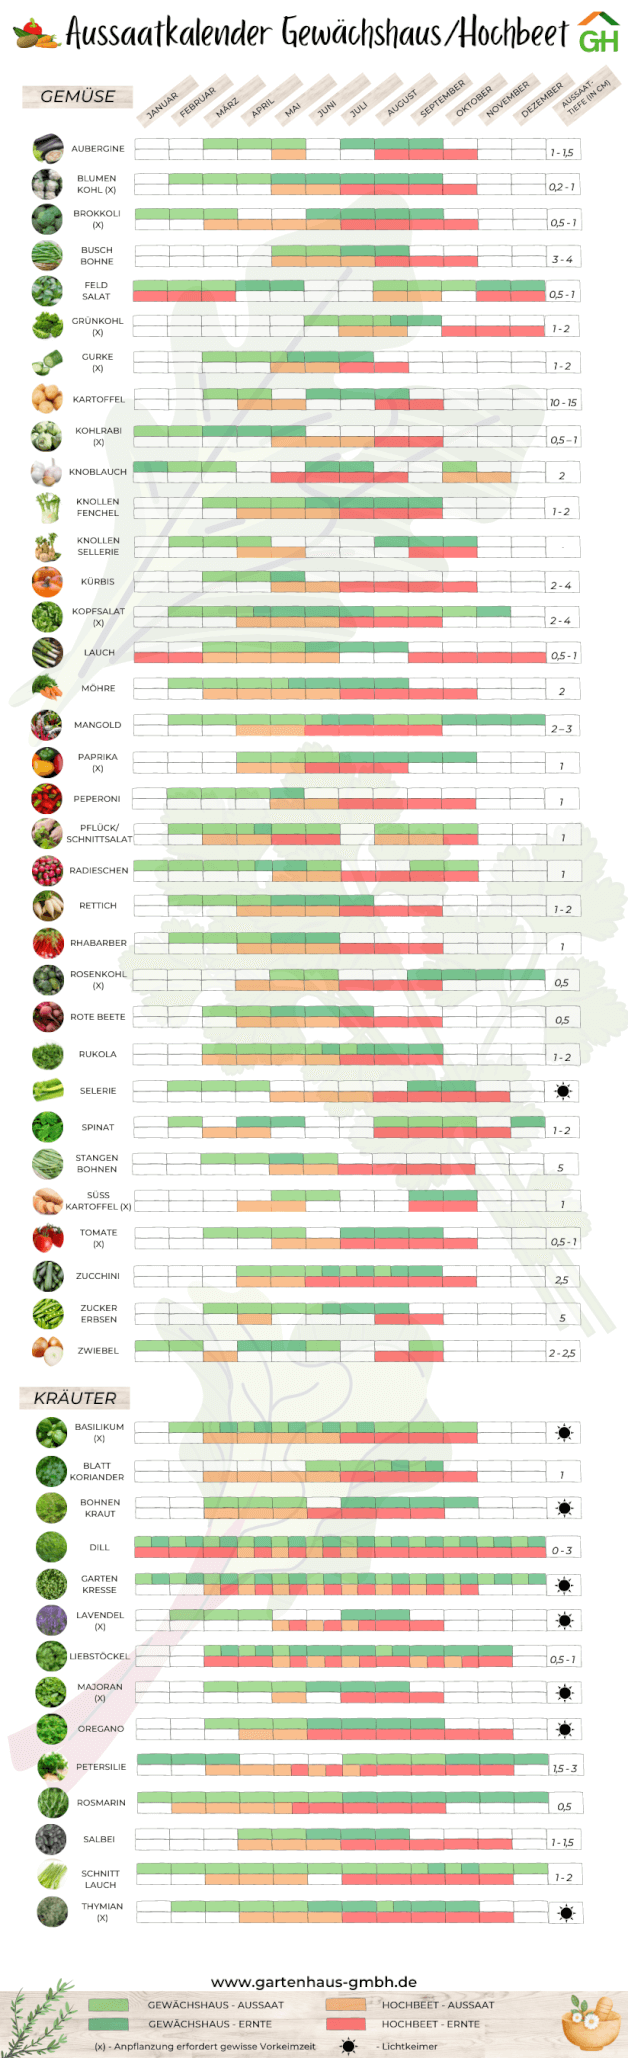 Aussaatkalender für Gemüse und Kräuter für Gewächshaus und Hochbeet